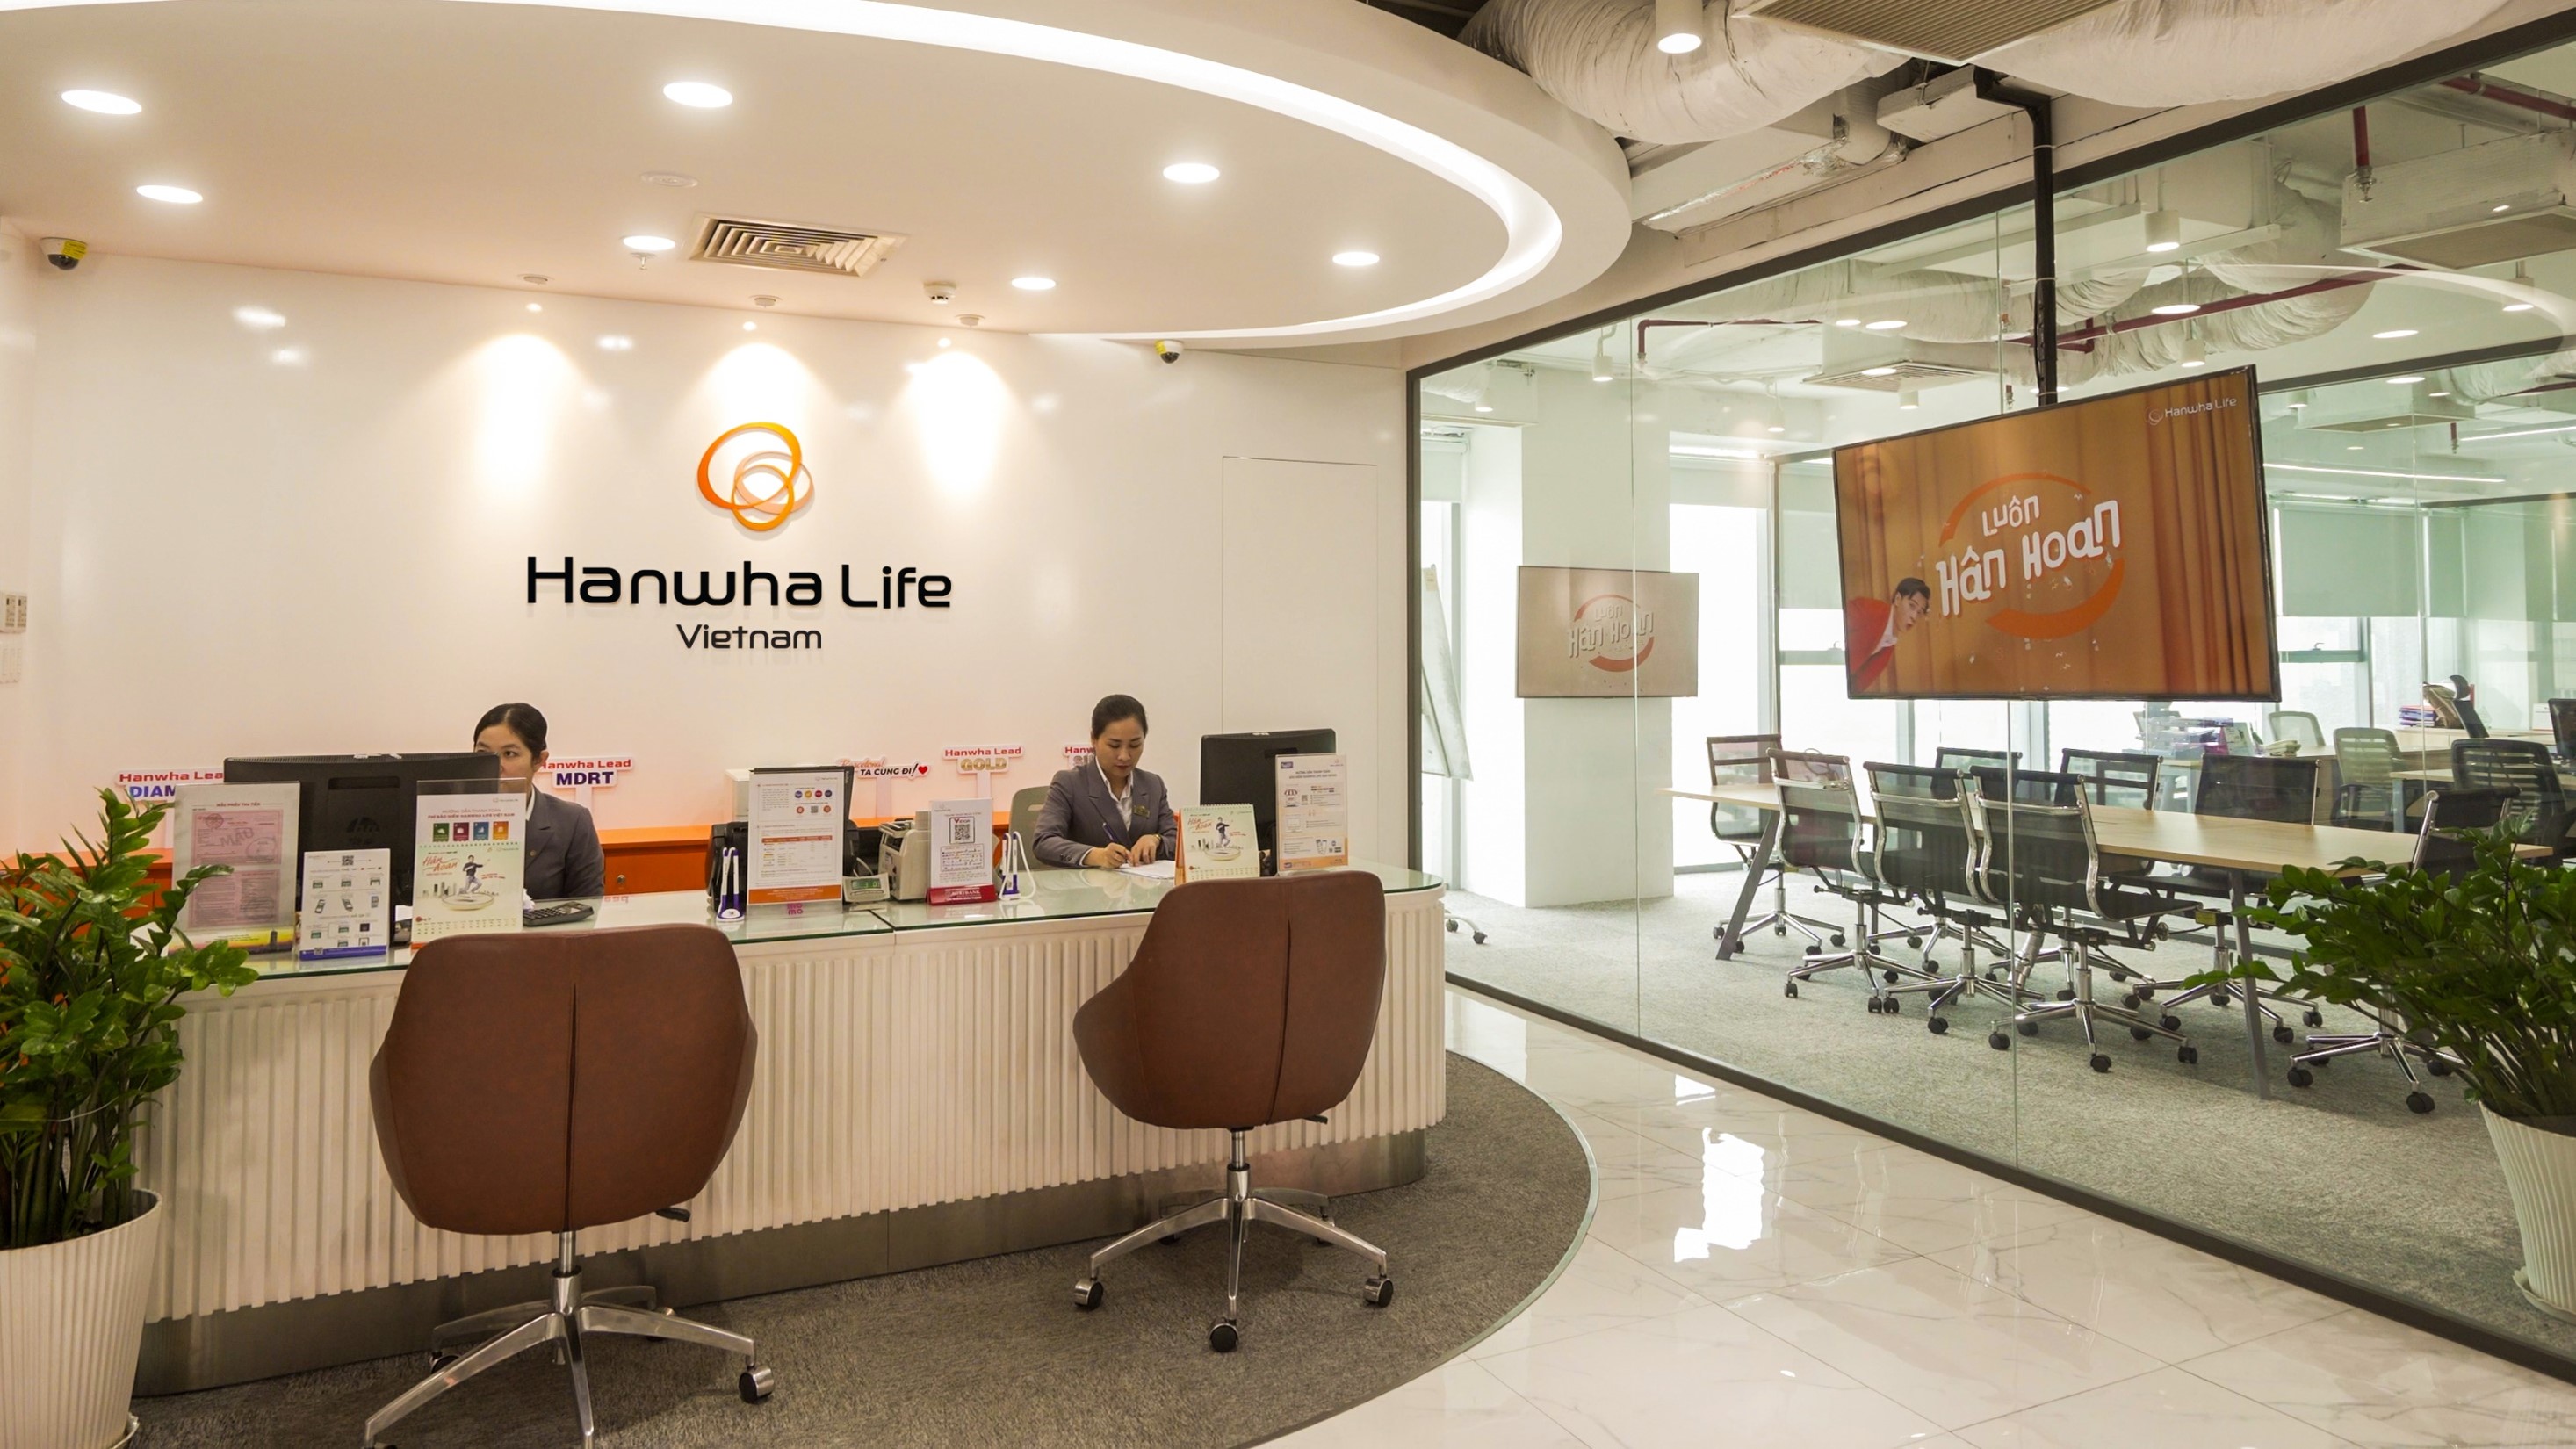 Với tầm nhìn trở thành công ty bảo hiểm được tín nhiệm hàng đầu tại Việt Nam, Hanwha Life không ngừng triển khai chiến lược lấy khách hàng làm trung tâm, tập trung nâng cao chất lượng dịch vụ và trải nghiệm khách hàng. 